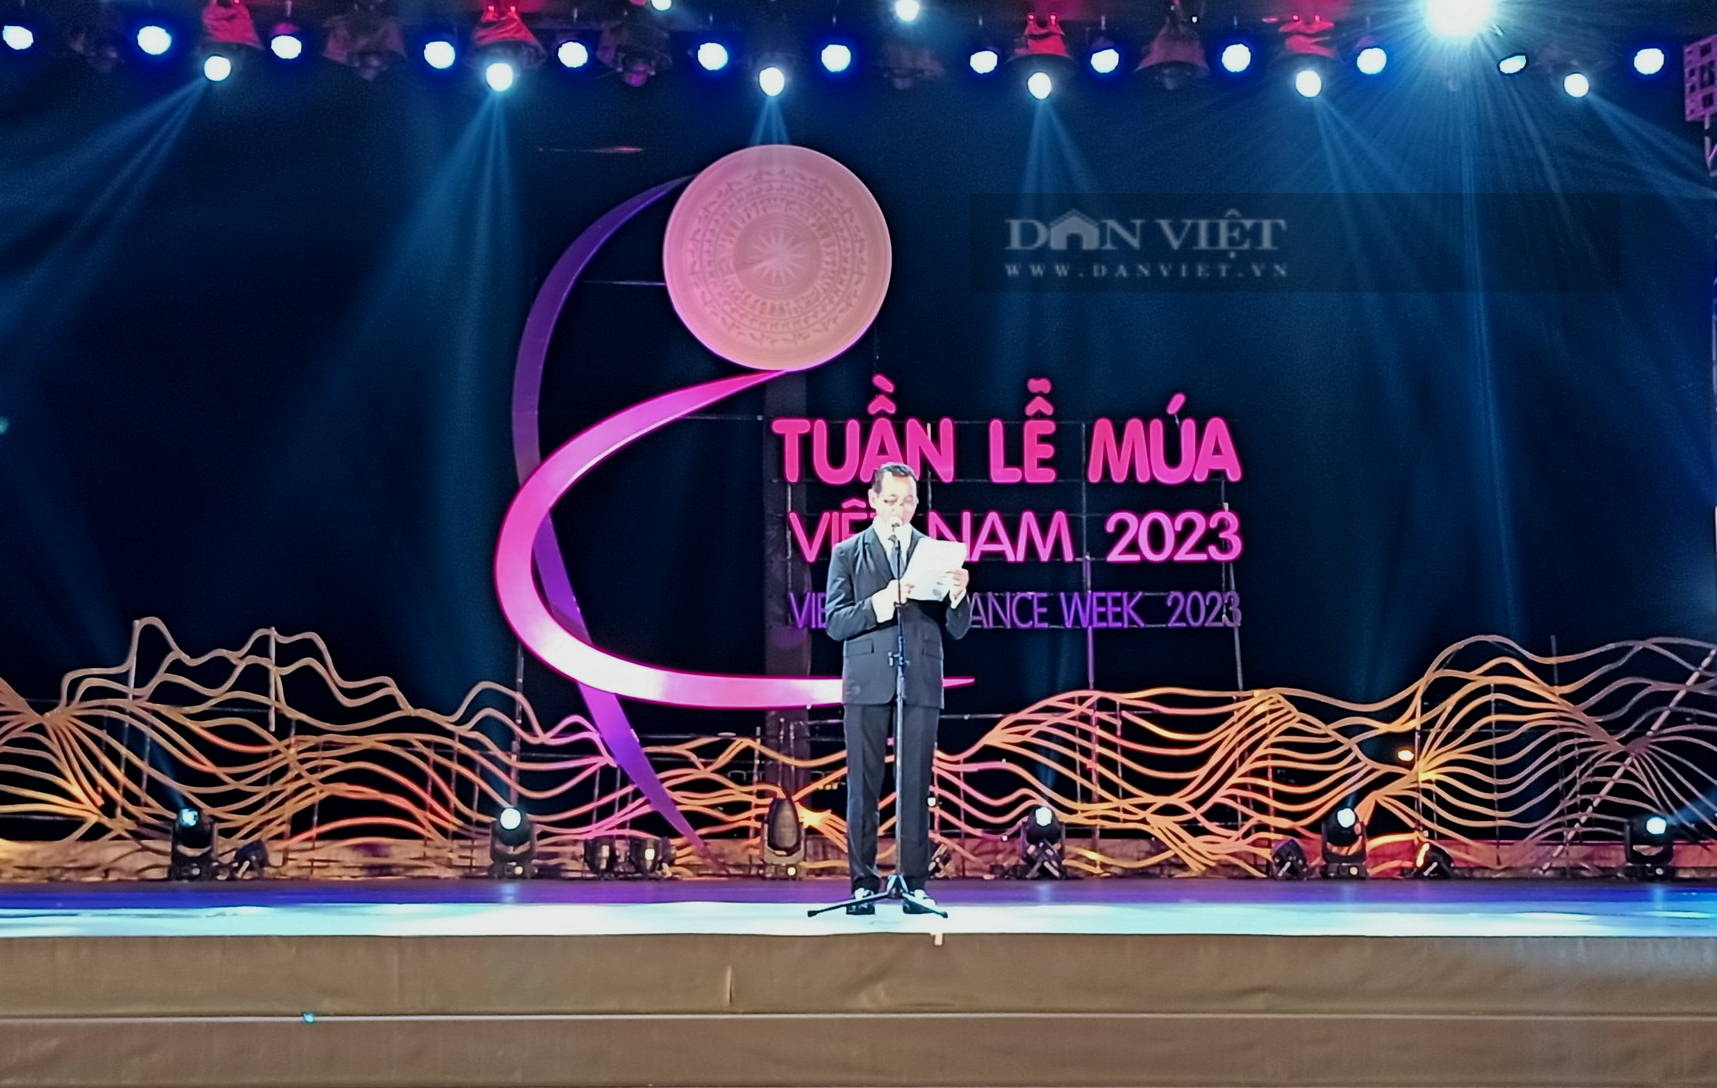 Tuần lễ Múa Việt Nam năm 2023: Ra mắt vũ điệu khiến ai xem cũng phải hào hứng tham gia - Ảnh 1.